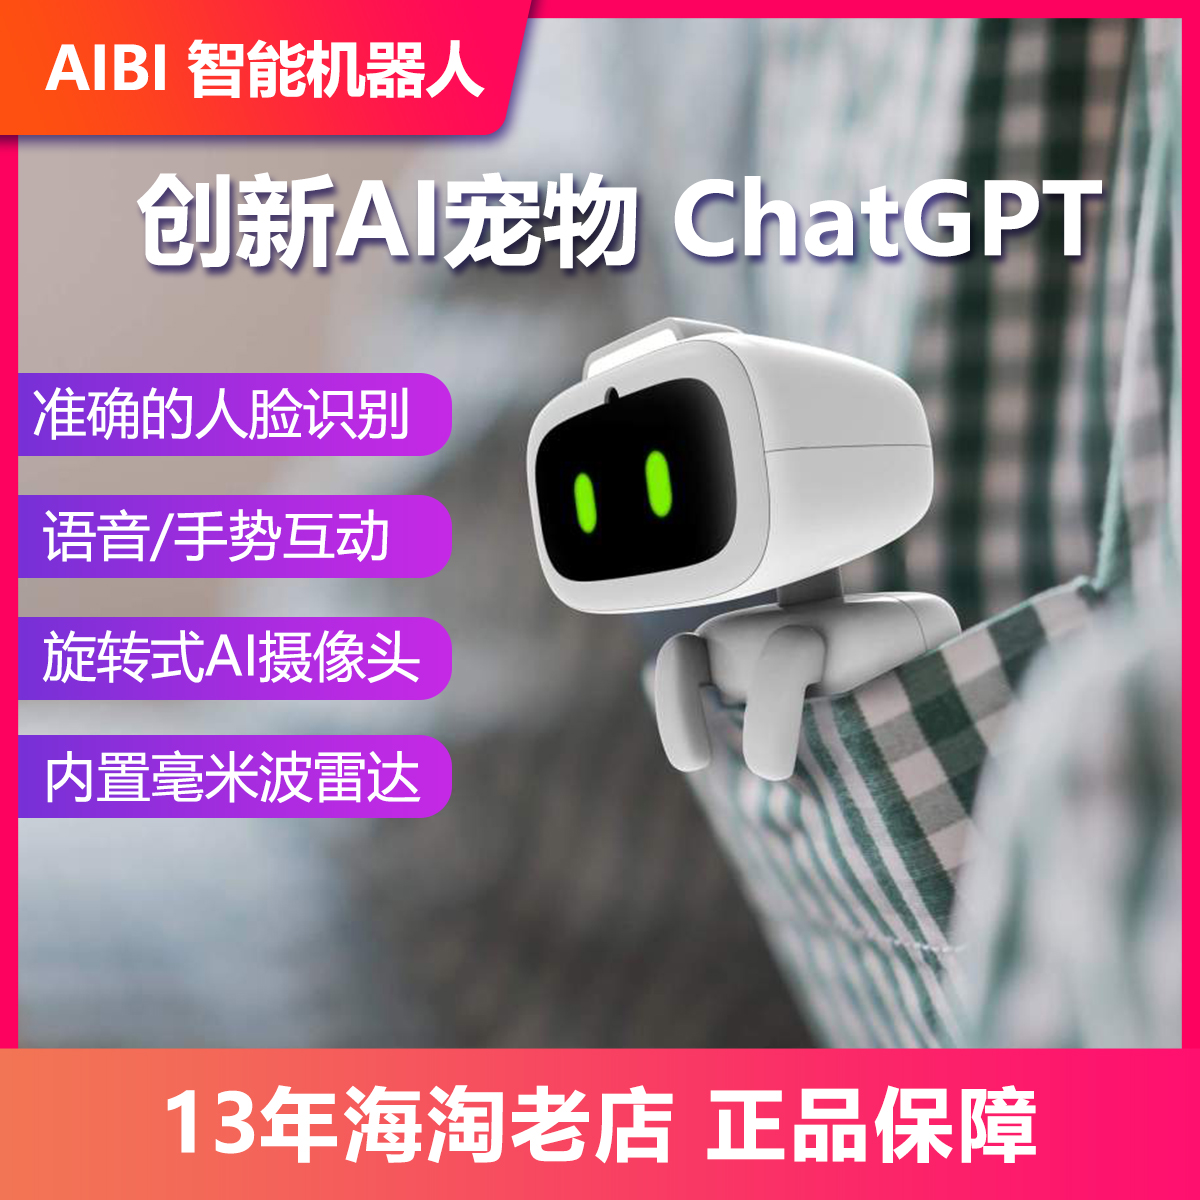 AIBI智能机器人口袋宠物机器人艾比宠物AI智能支持GPT旋转摄像头